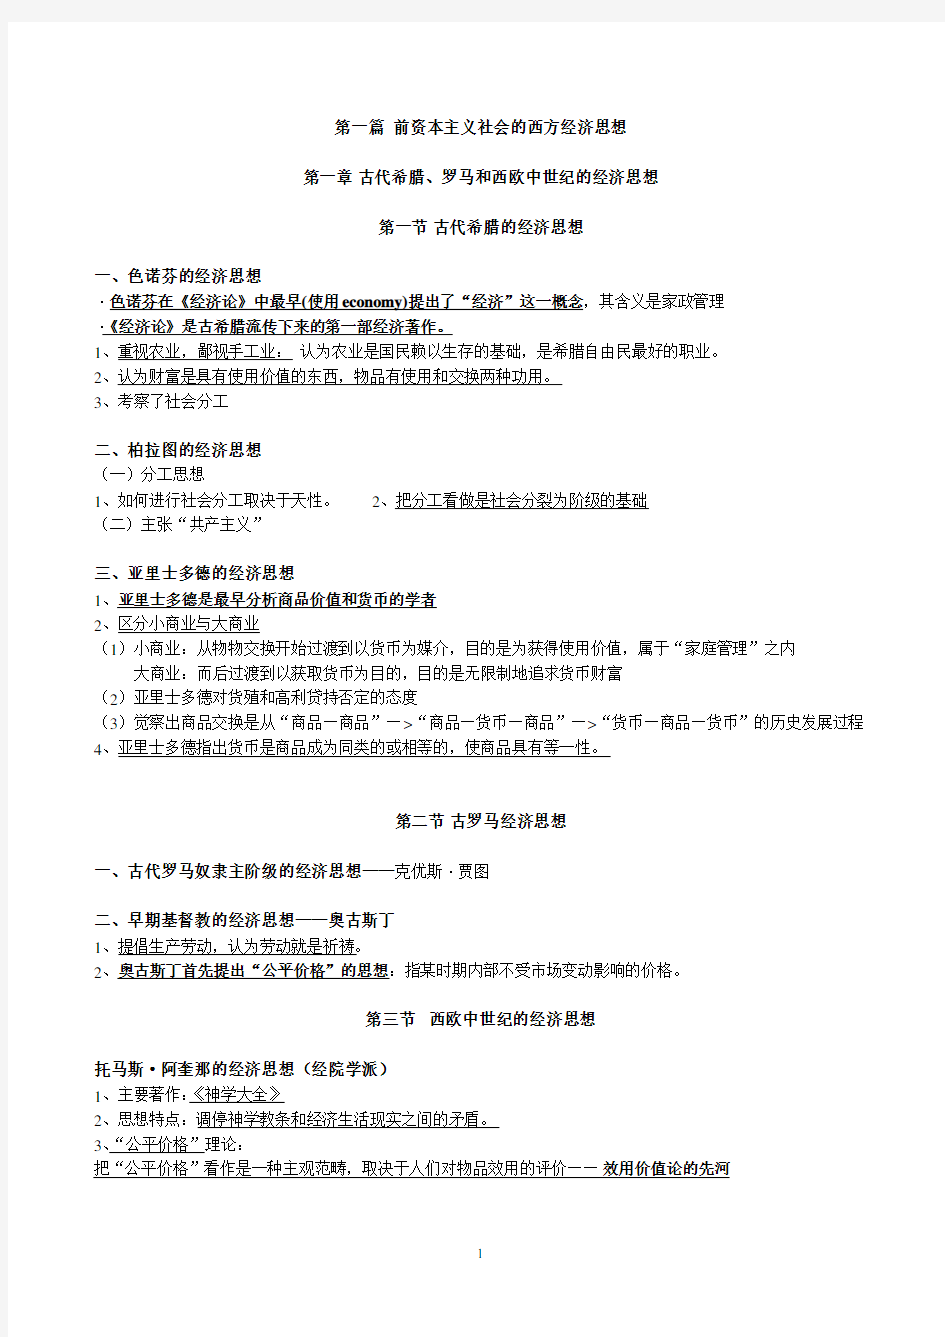 经济学说史教程重点(2020年10月整理).pdf